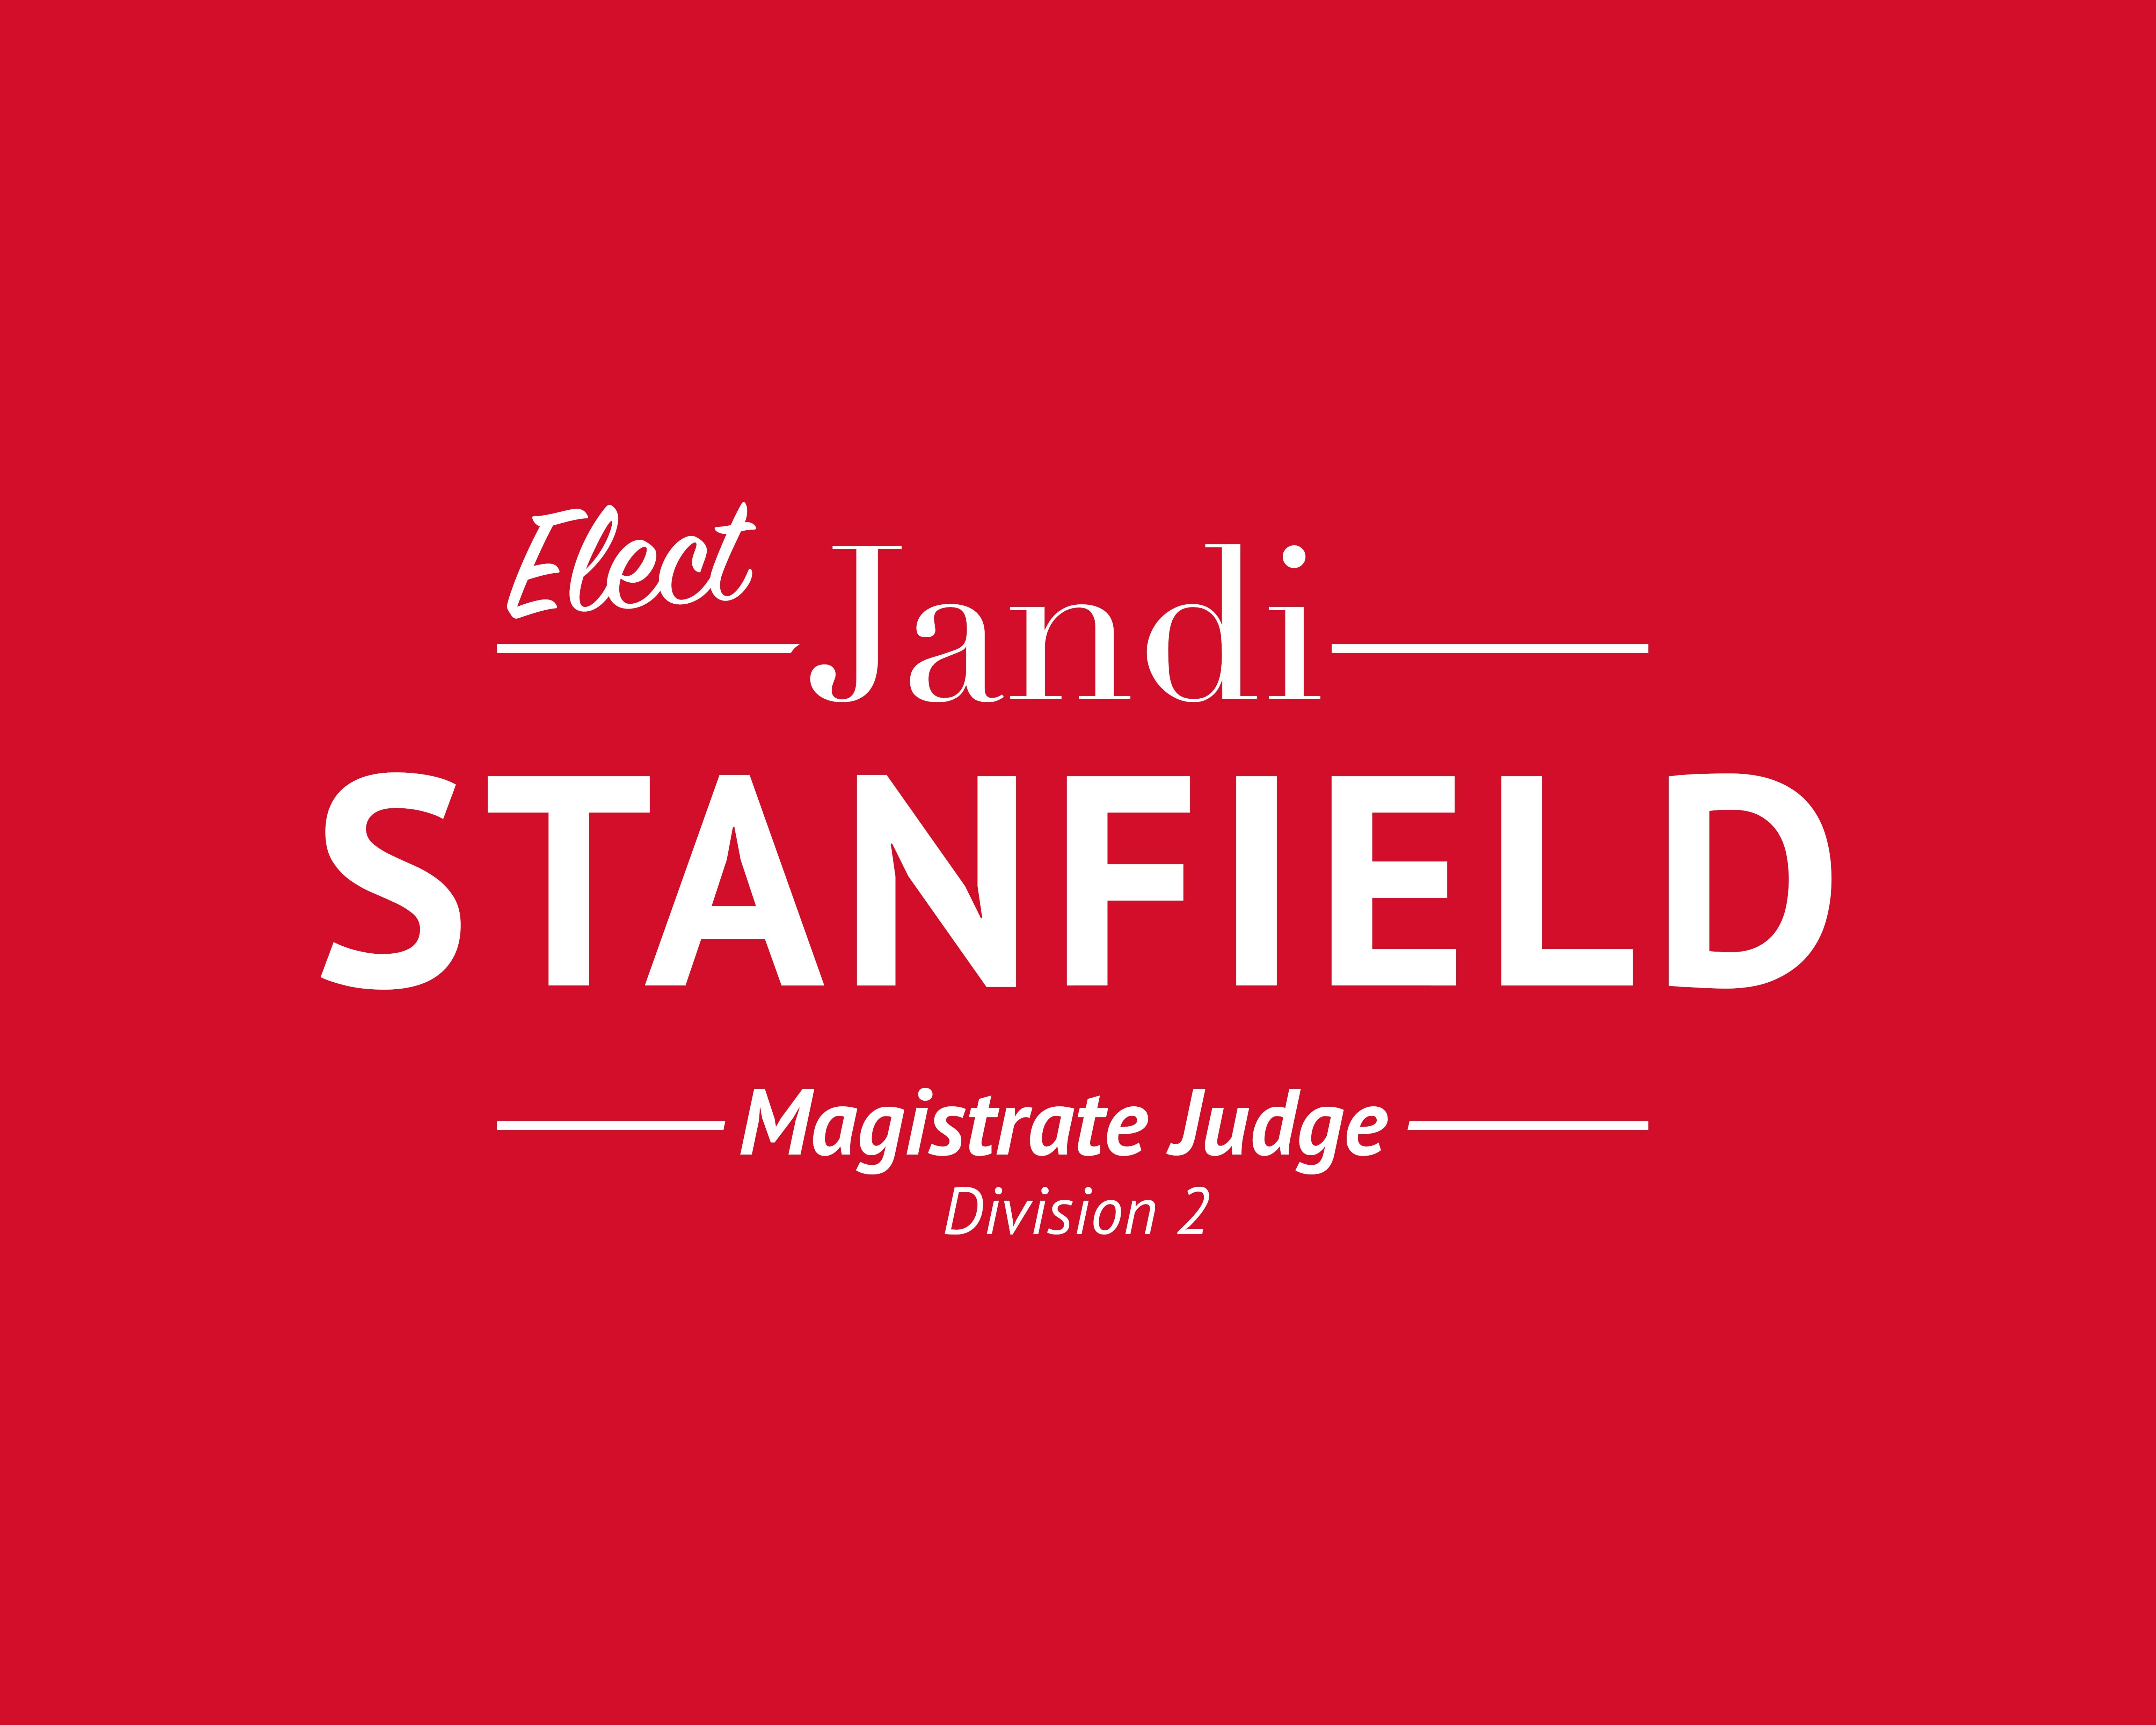 Elect Jandi Stanfield